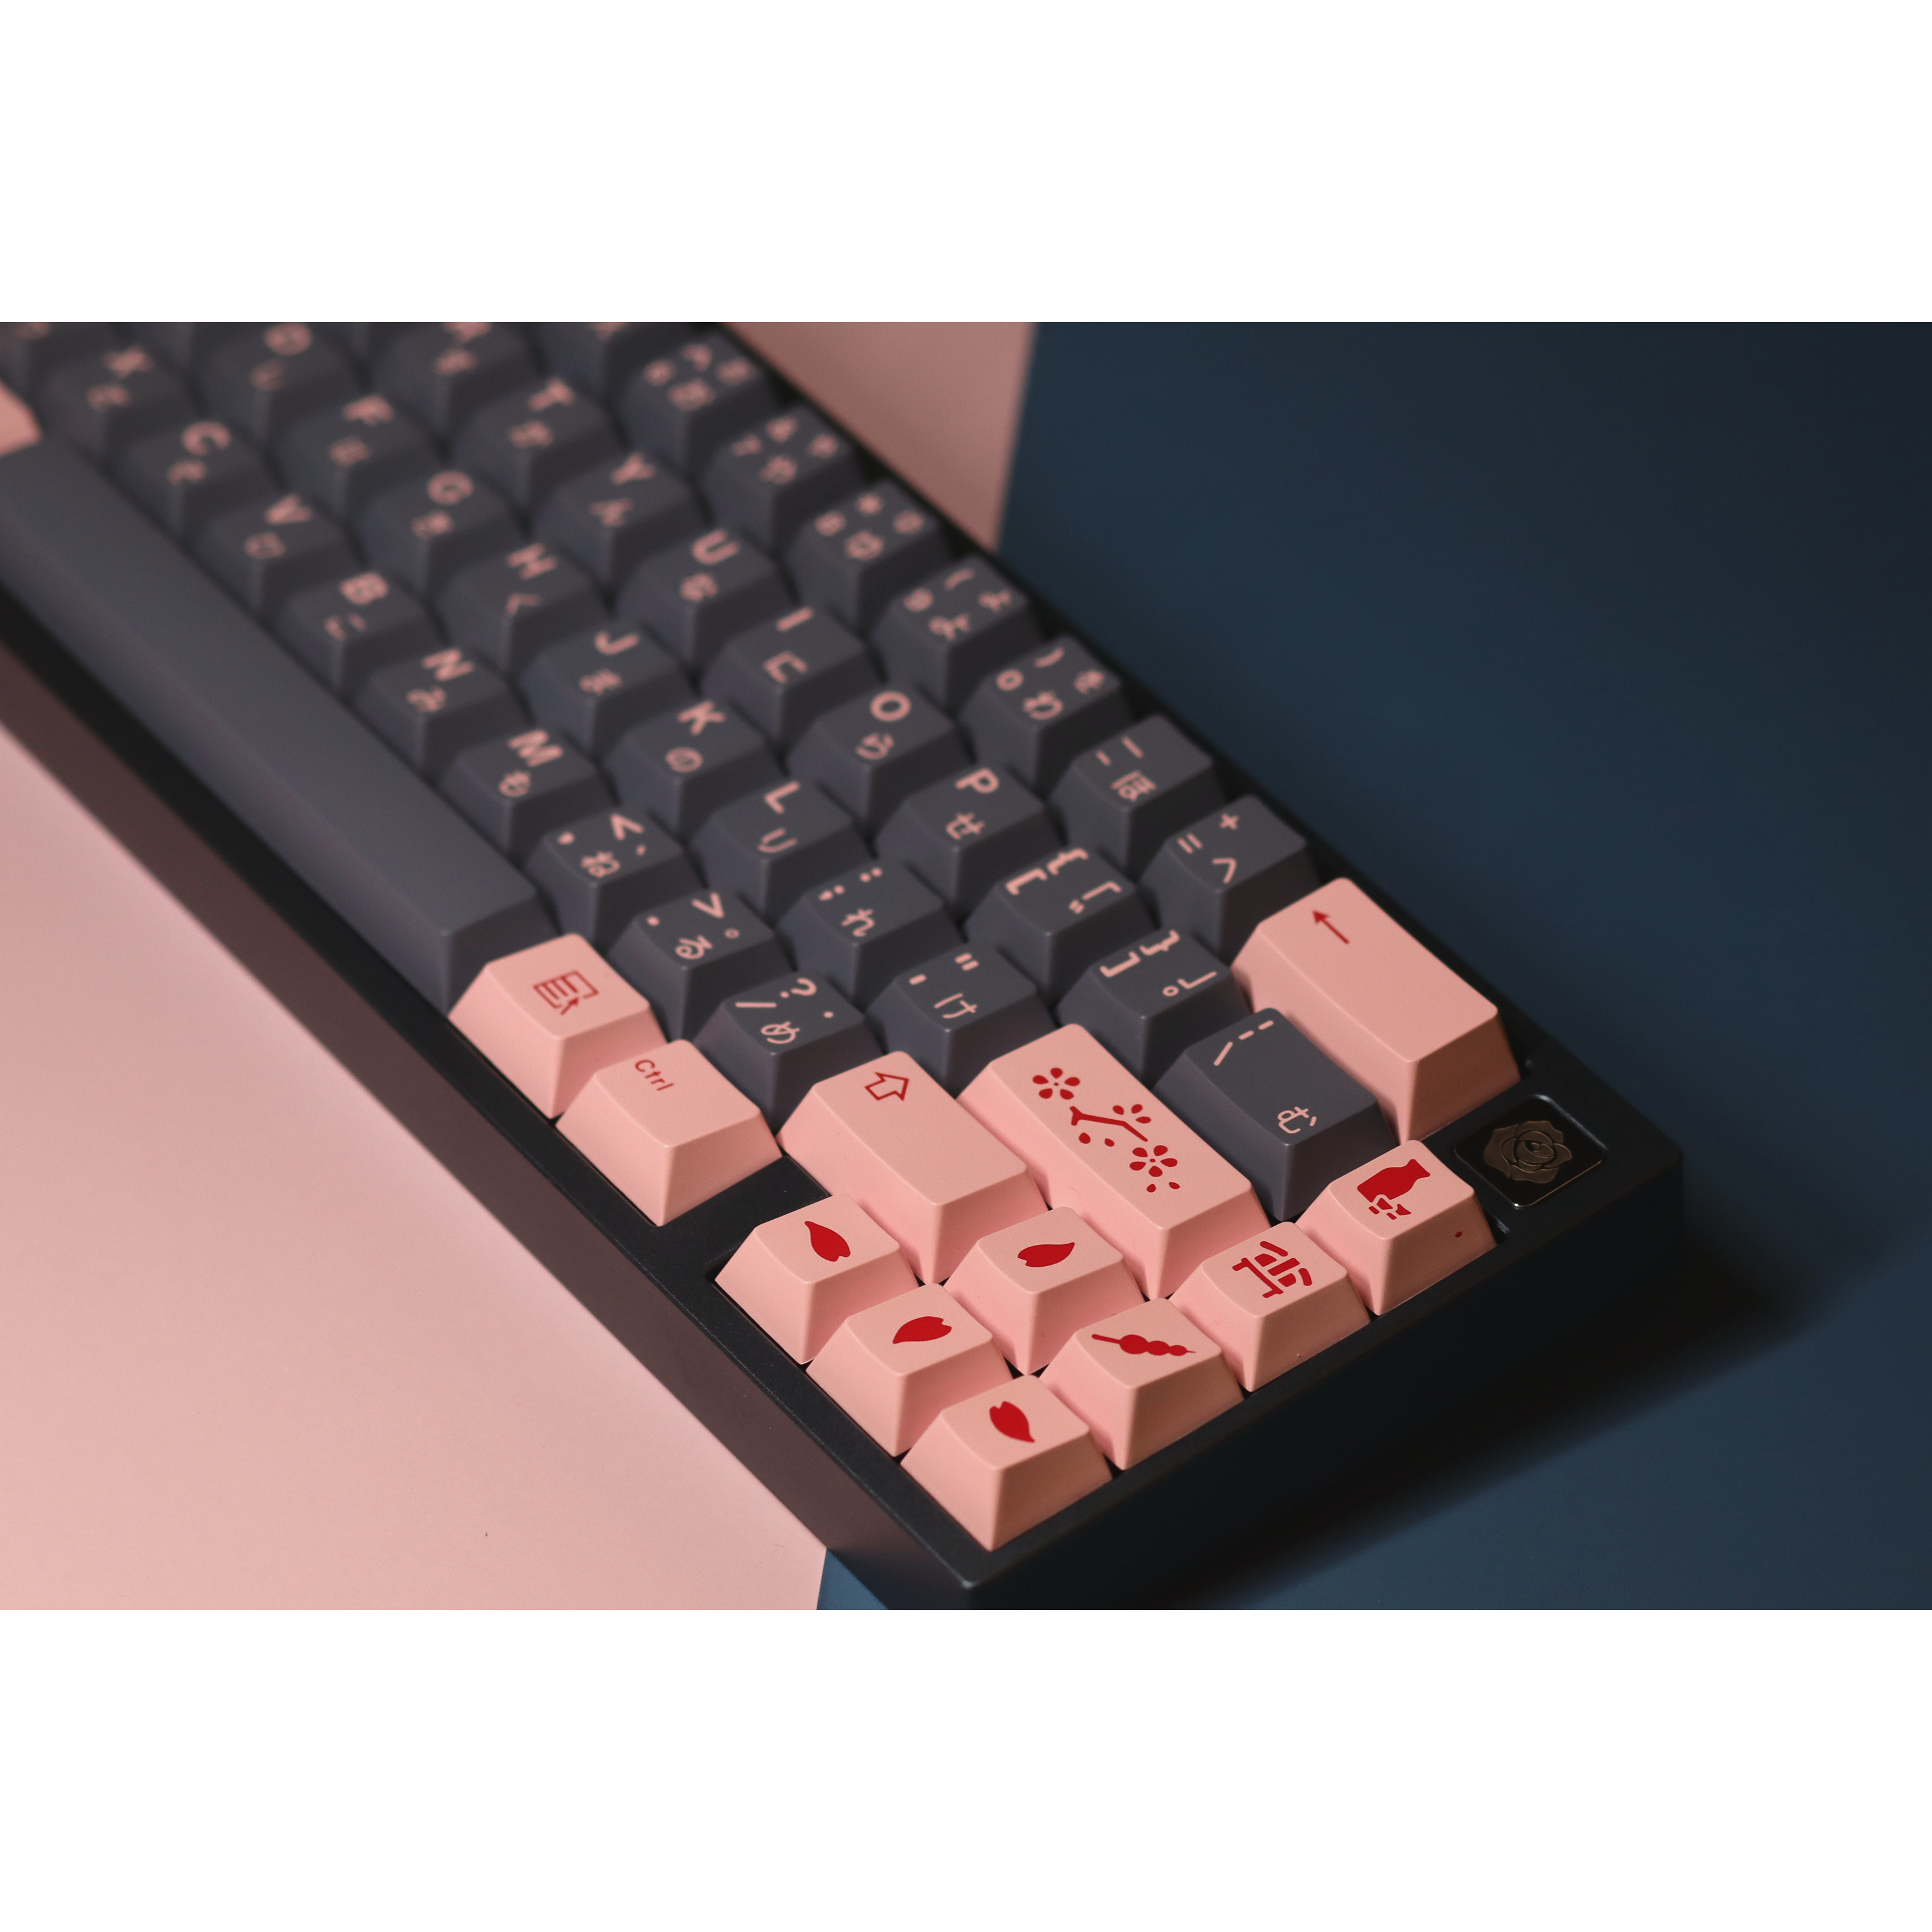 Roze65 Keyboard Kit